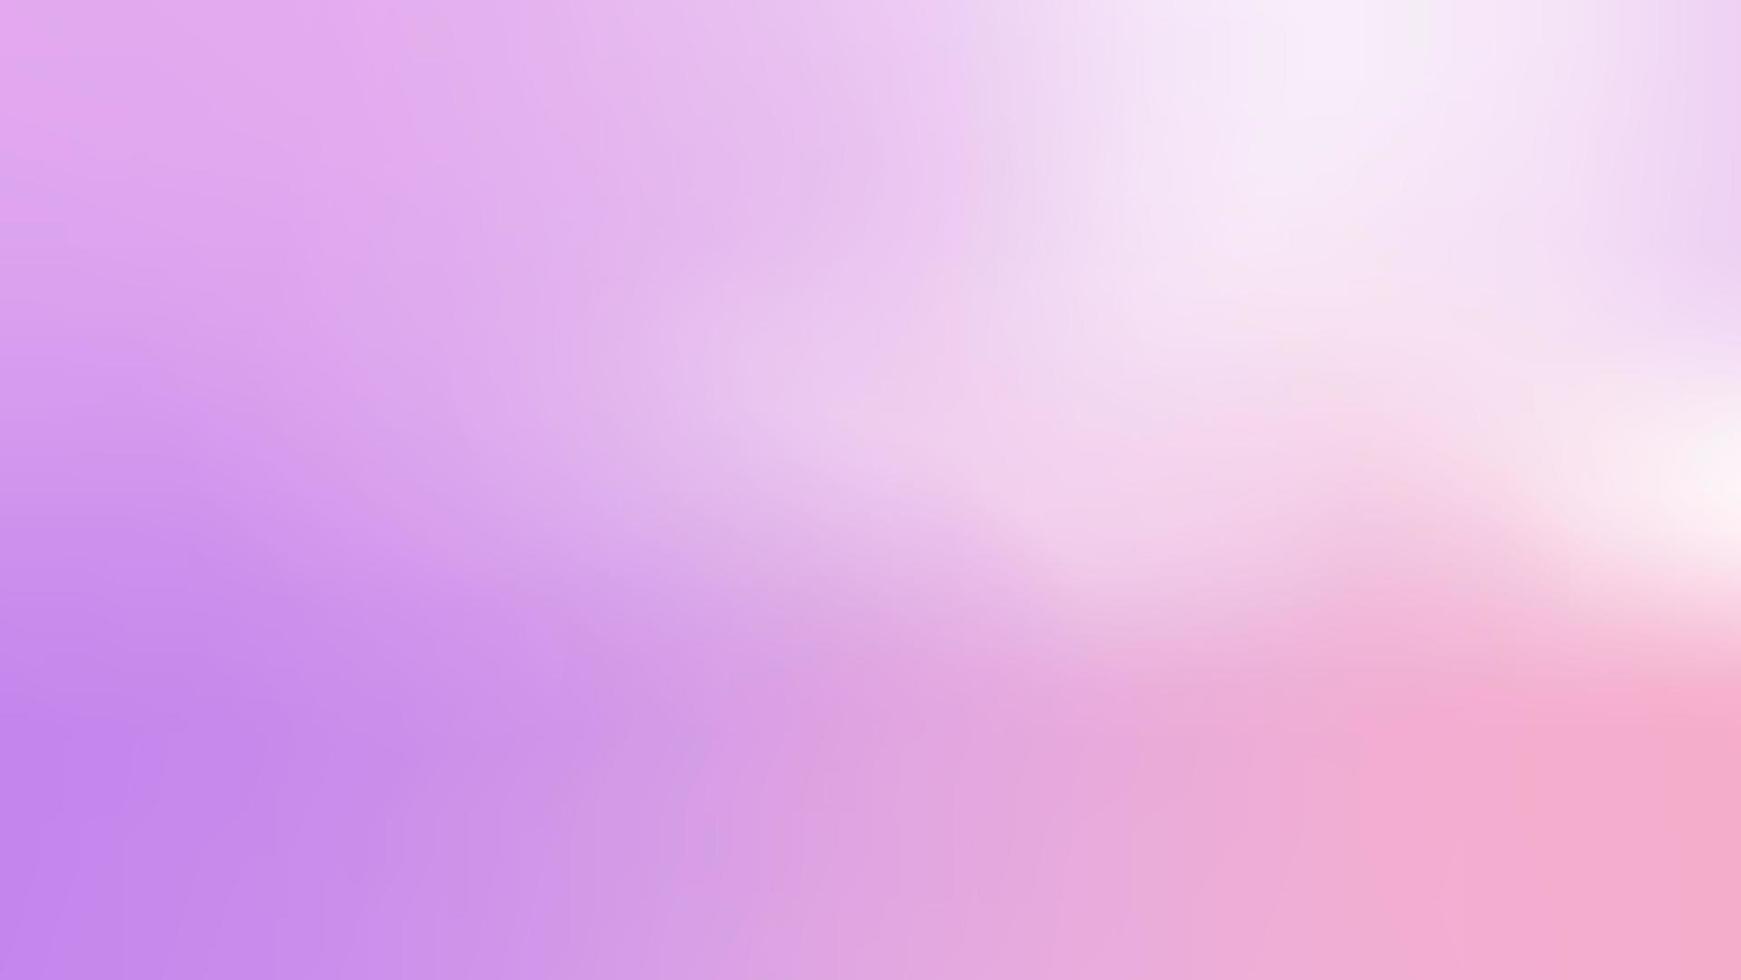 abstrakter lila und rosa malereihintergrund mit leerer unschärfe und glatter farbtextur vektor